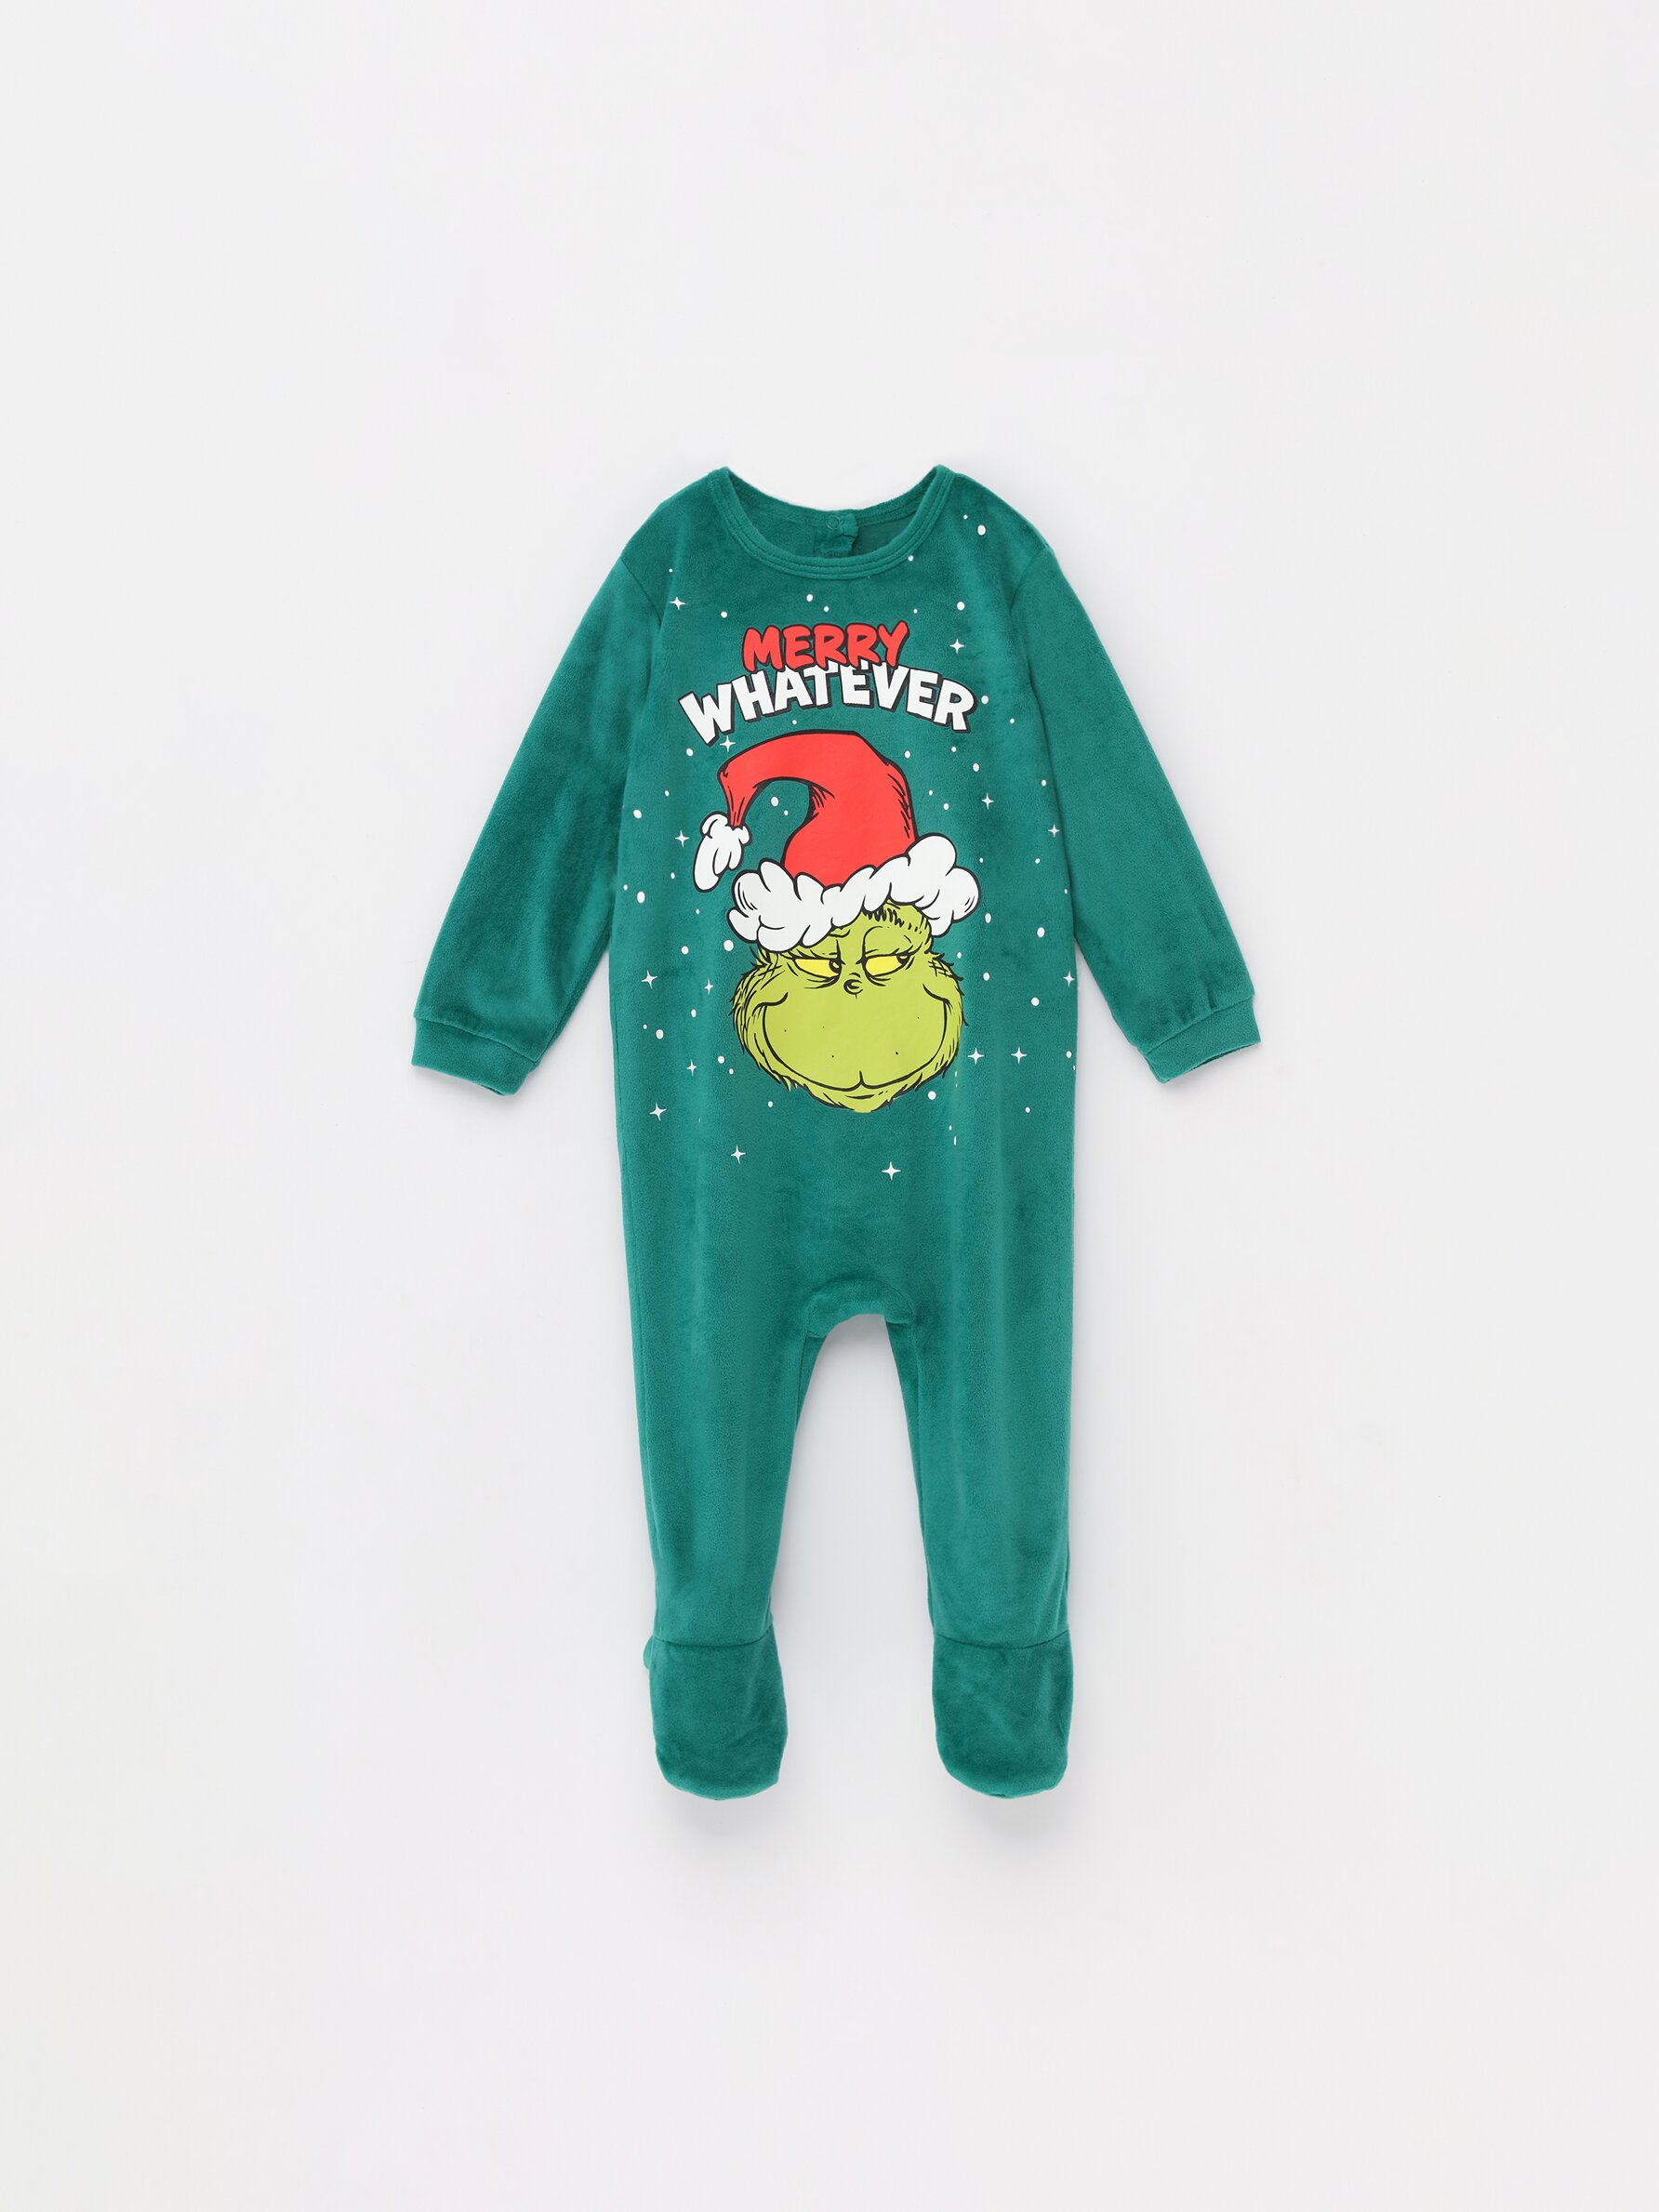 Bebé, Pijama familiar Grinch terciopelo - Pijamas - ROPA INTERIOR, PIJAMAS  - Bebé Niño - Niños 